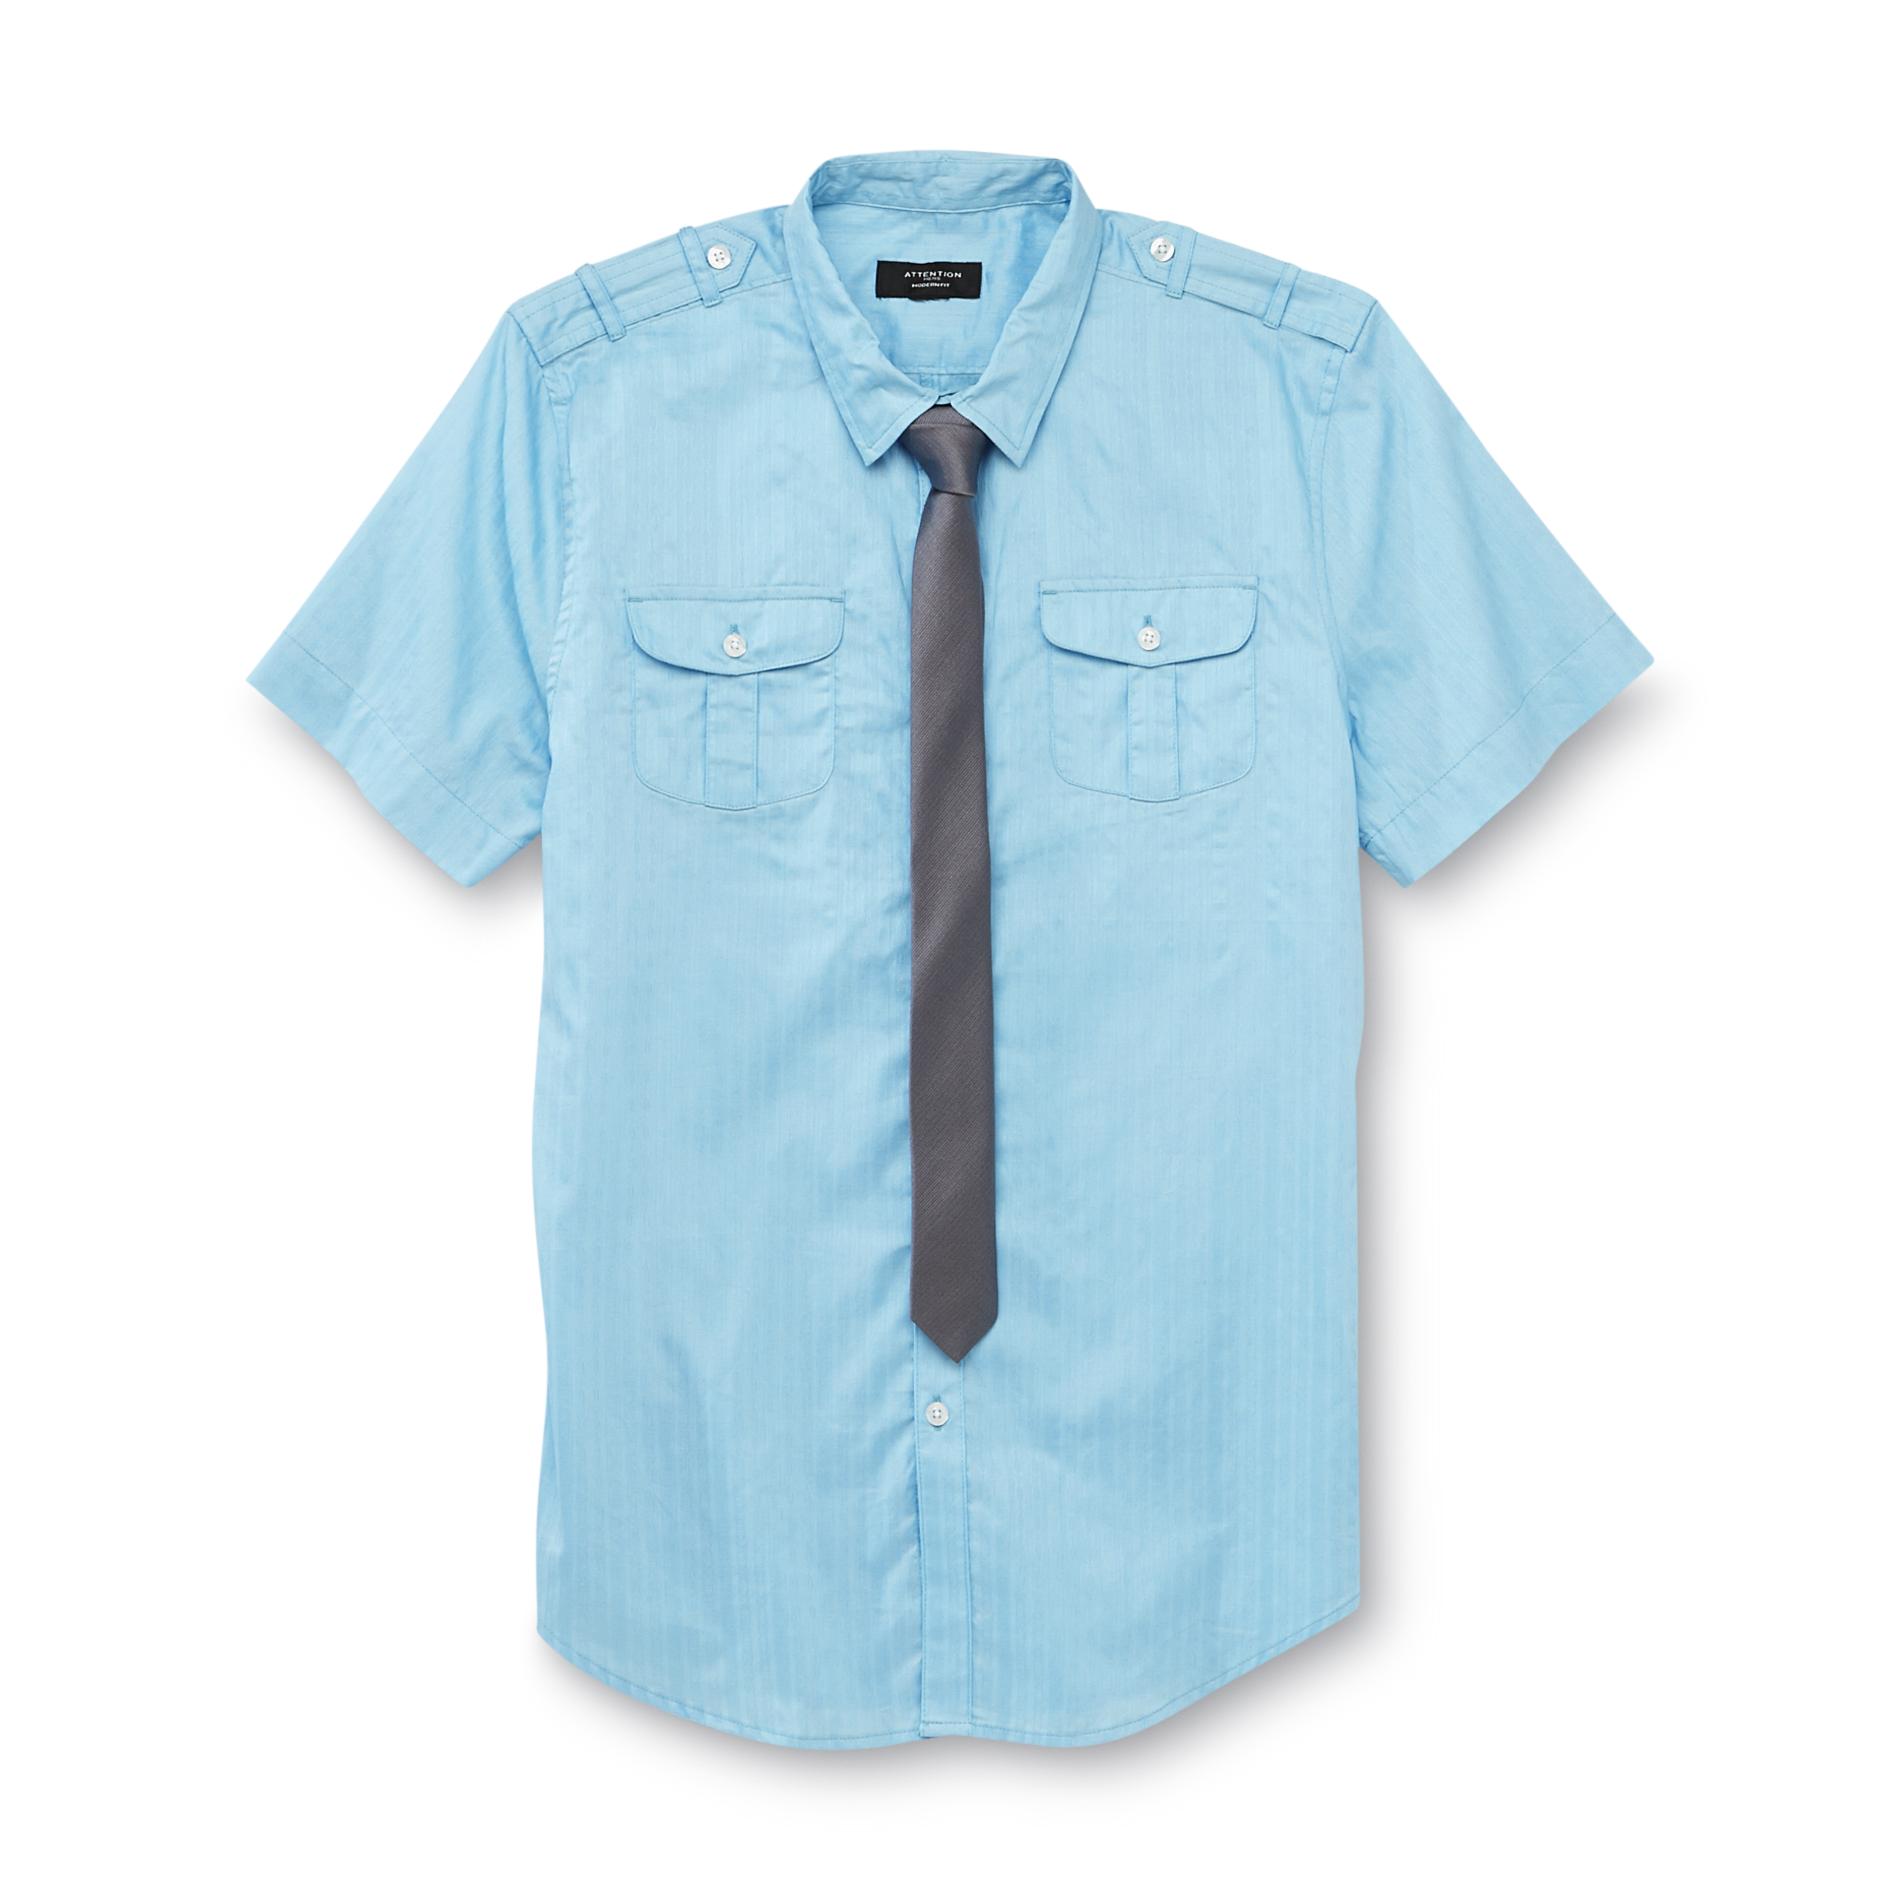 Attention Men's Short-Sleeve Shirt & Skinny Tie